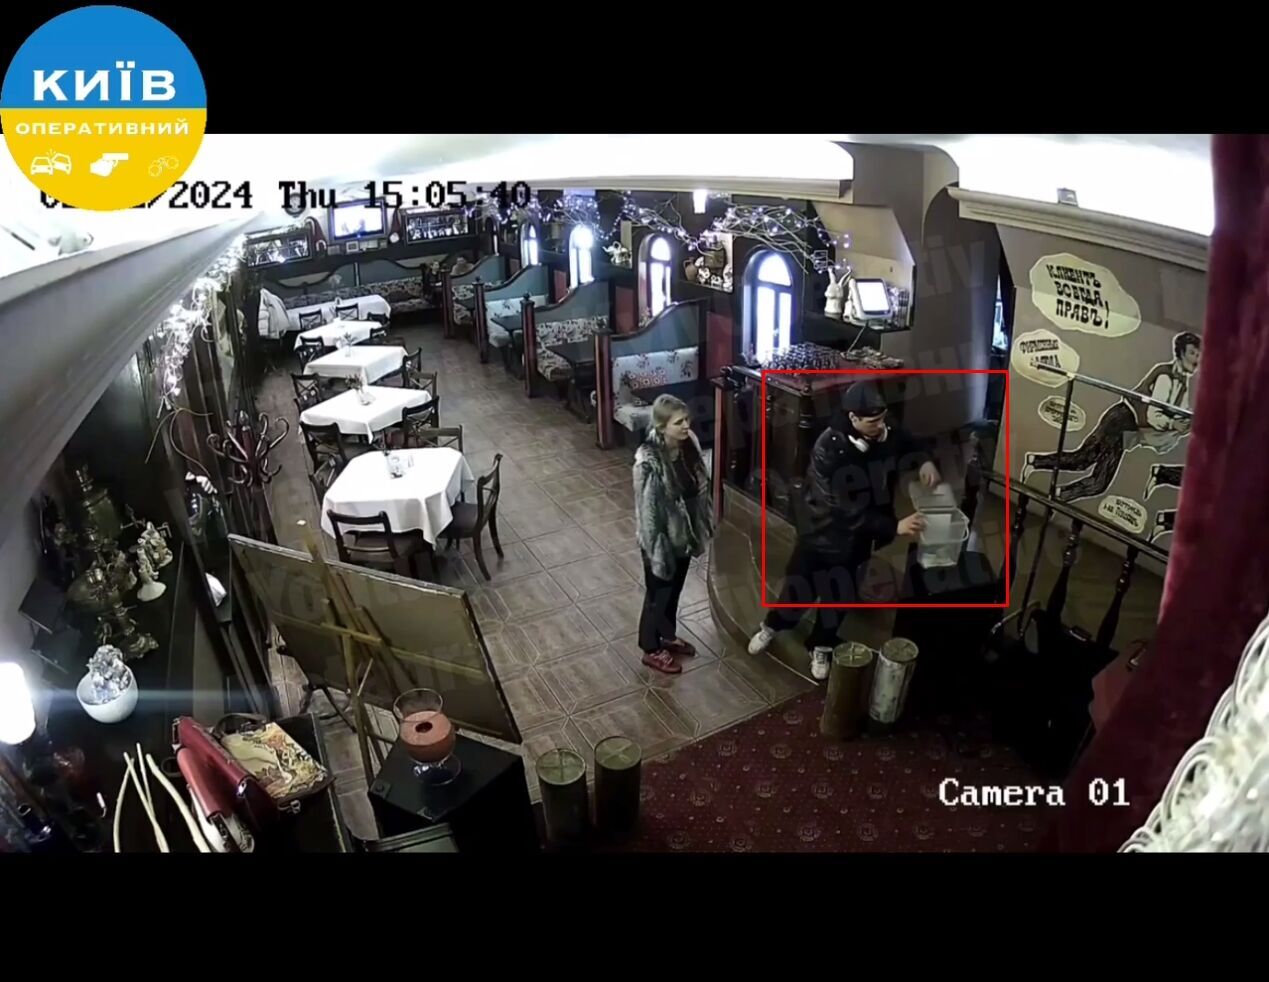 У ресторані Києва пара вкрала гроші зі скриньки для збору на ЗСУ: одного злочинця затримали. Фото і відео